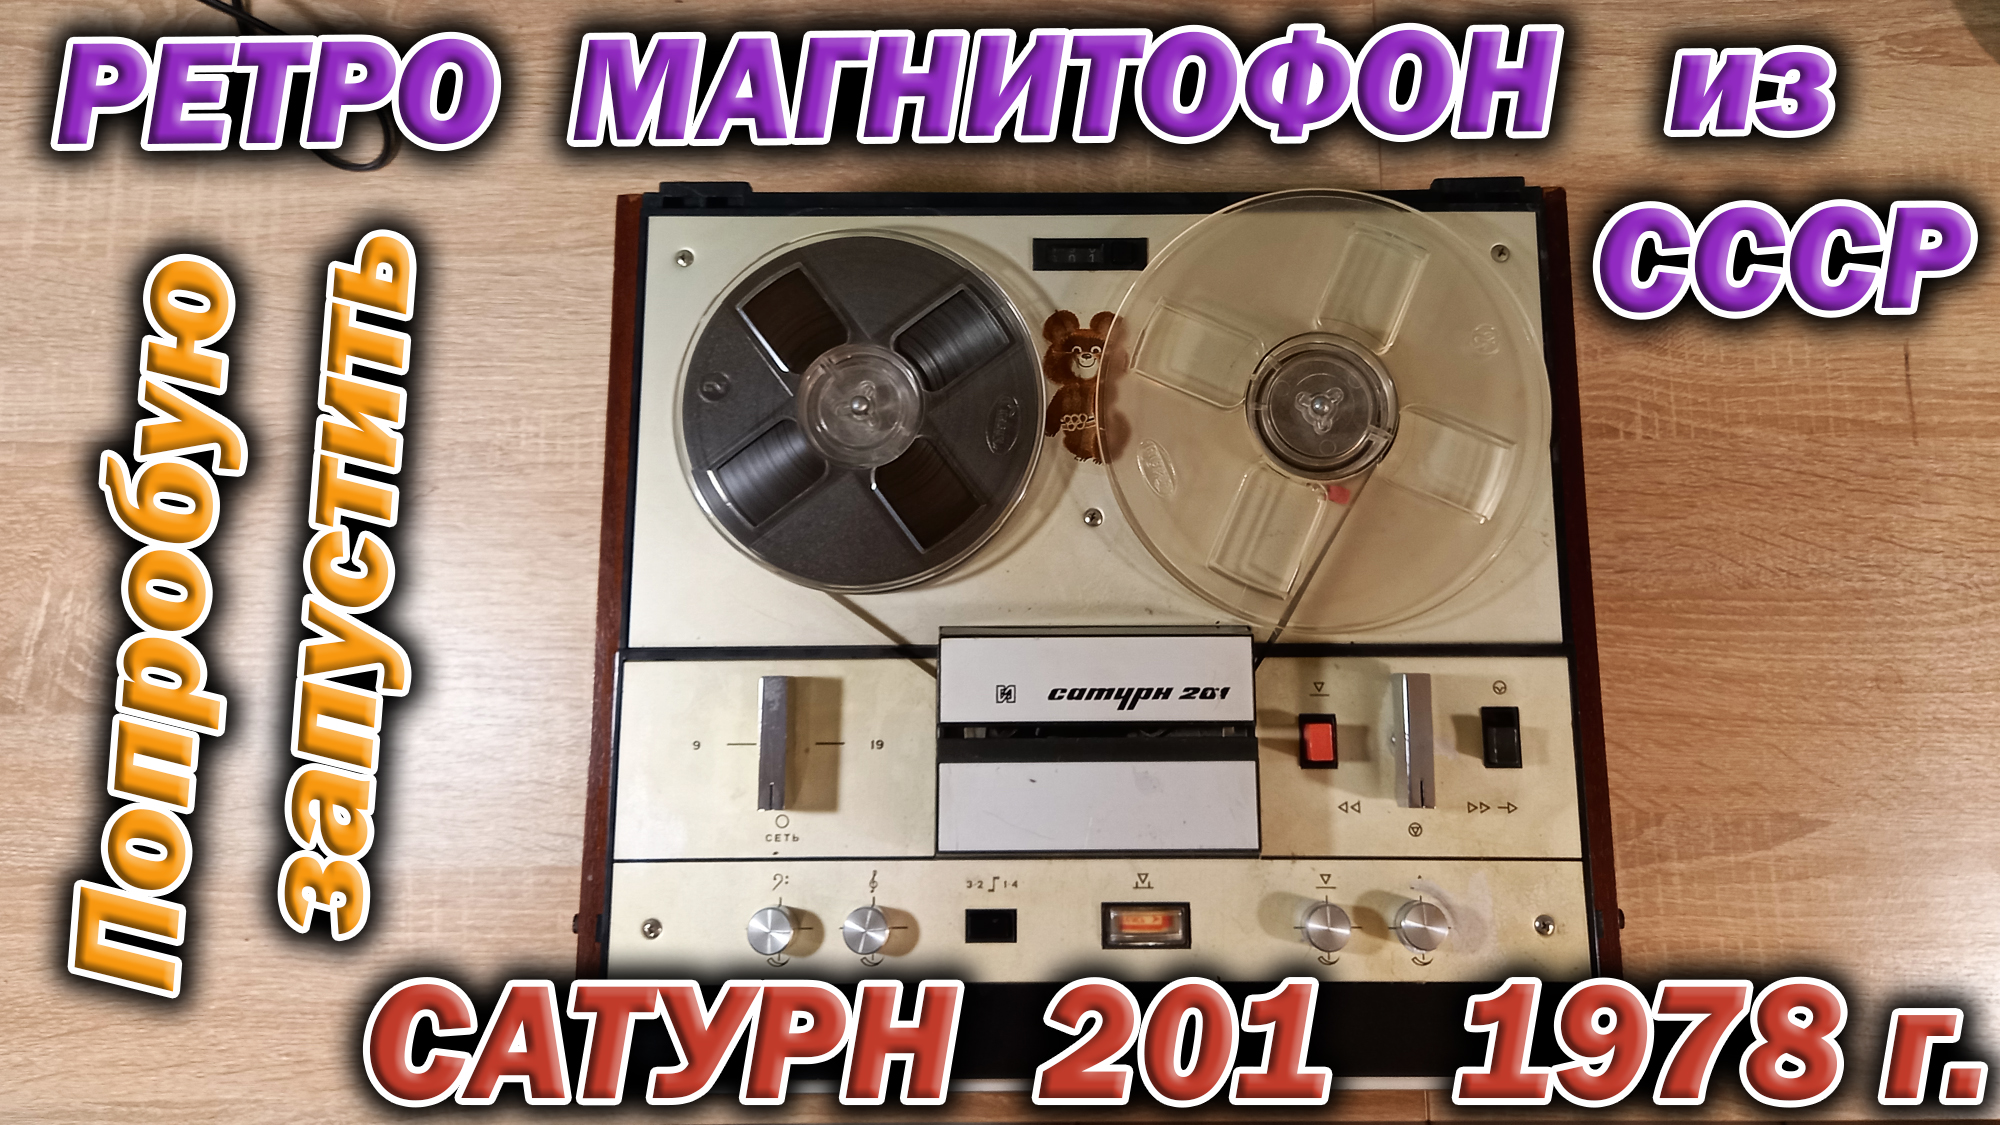 Катушечный советский ретро магнитофон Сатурн 201 аж 1978 г. выпуска. Попробую запустить старичка.